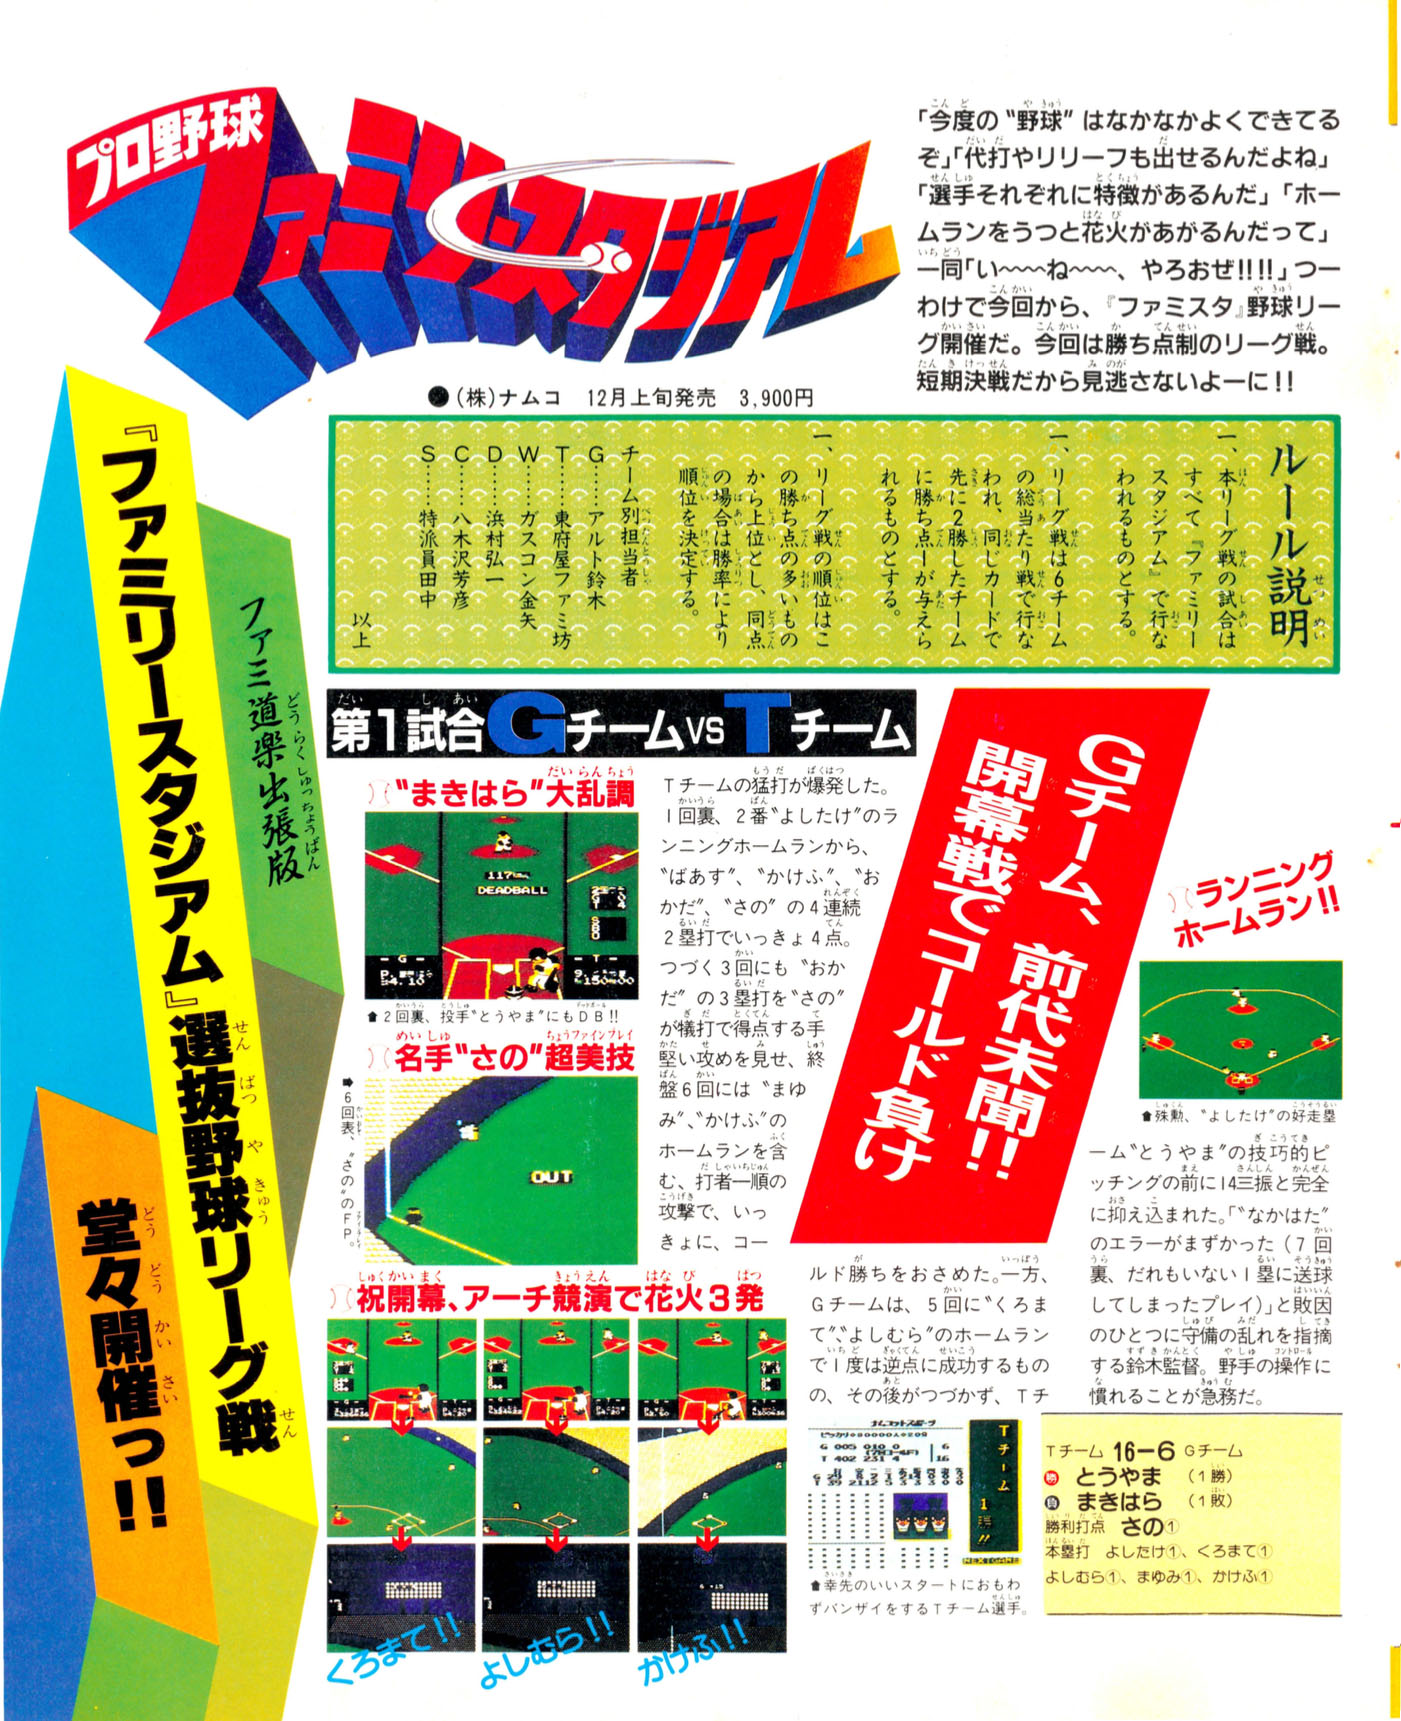 Pro Yakyuu: Family Stadium, Famitsu December 12, 1986 page 22